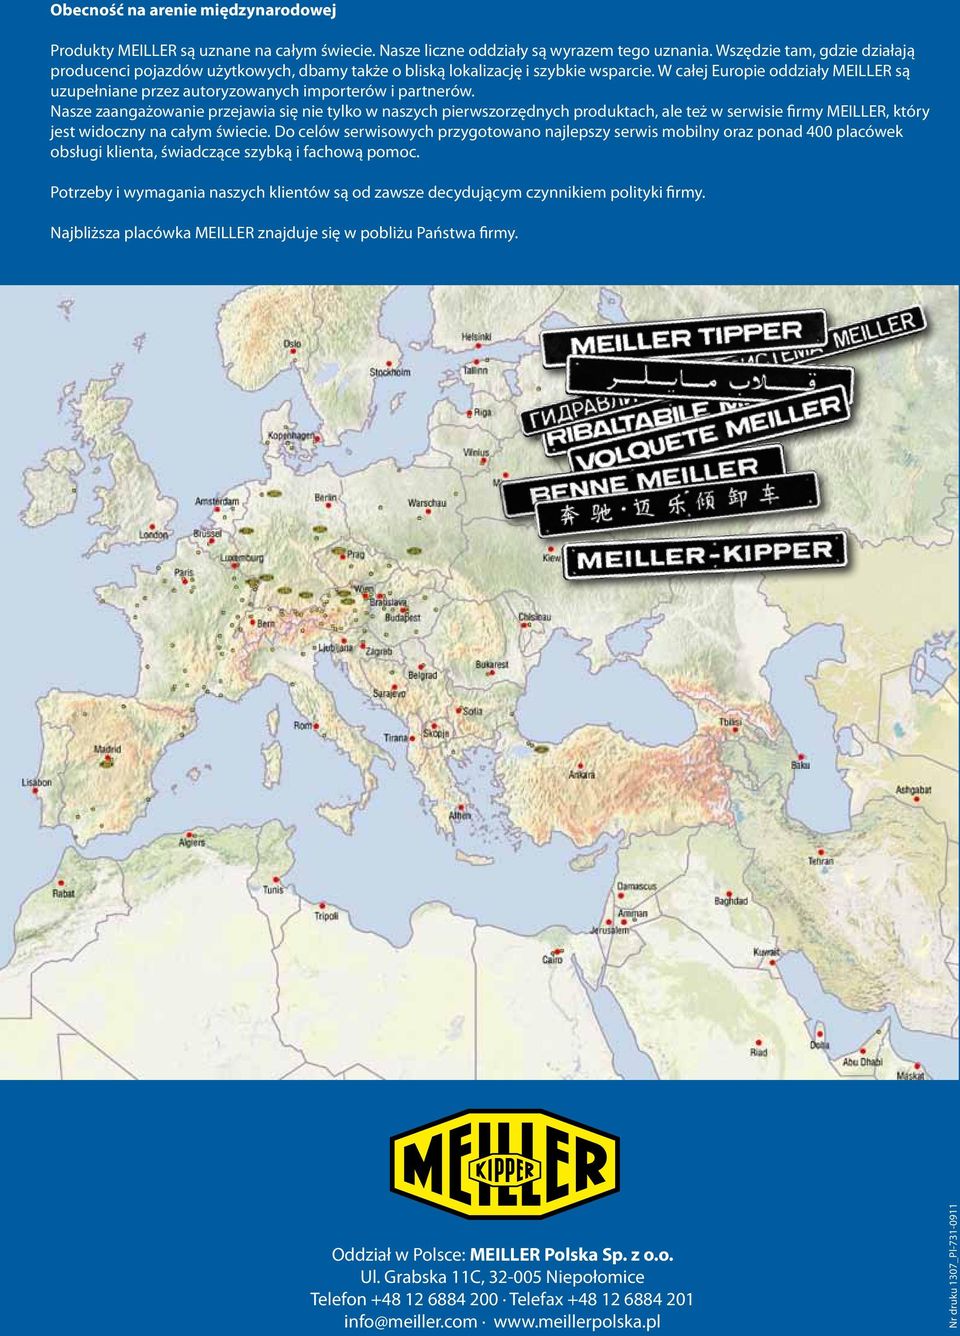 W całej Europie oddziały MEILLER są uzupełniane przez autoryzowanych importerów i partnerów.